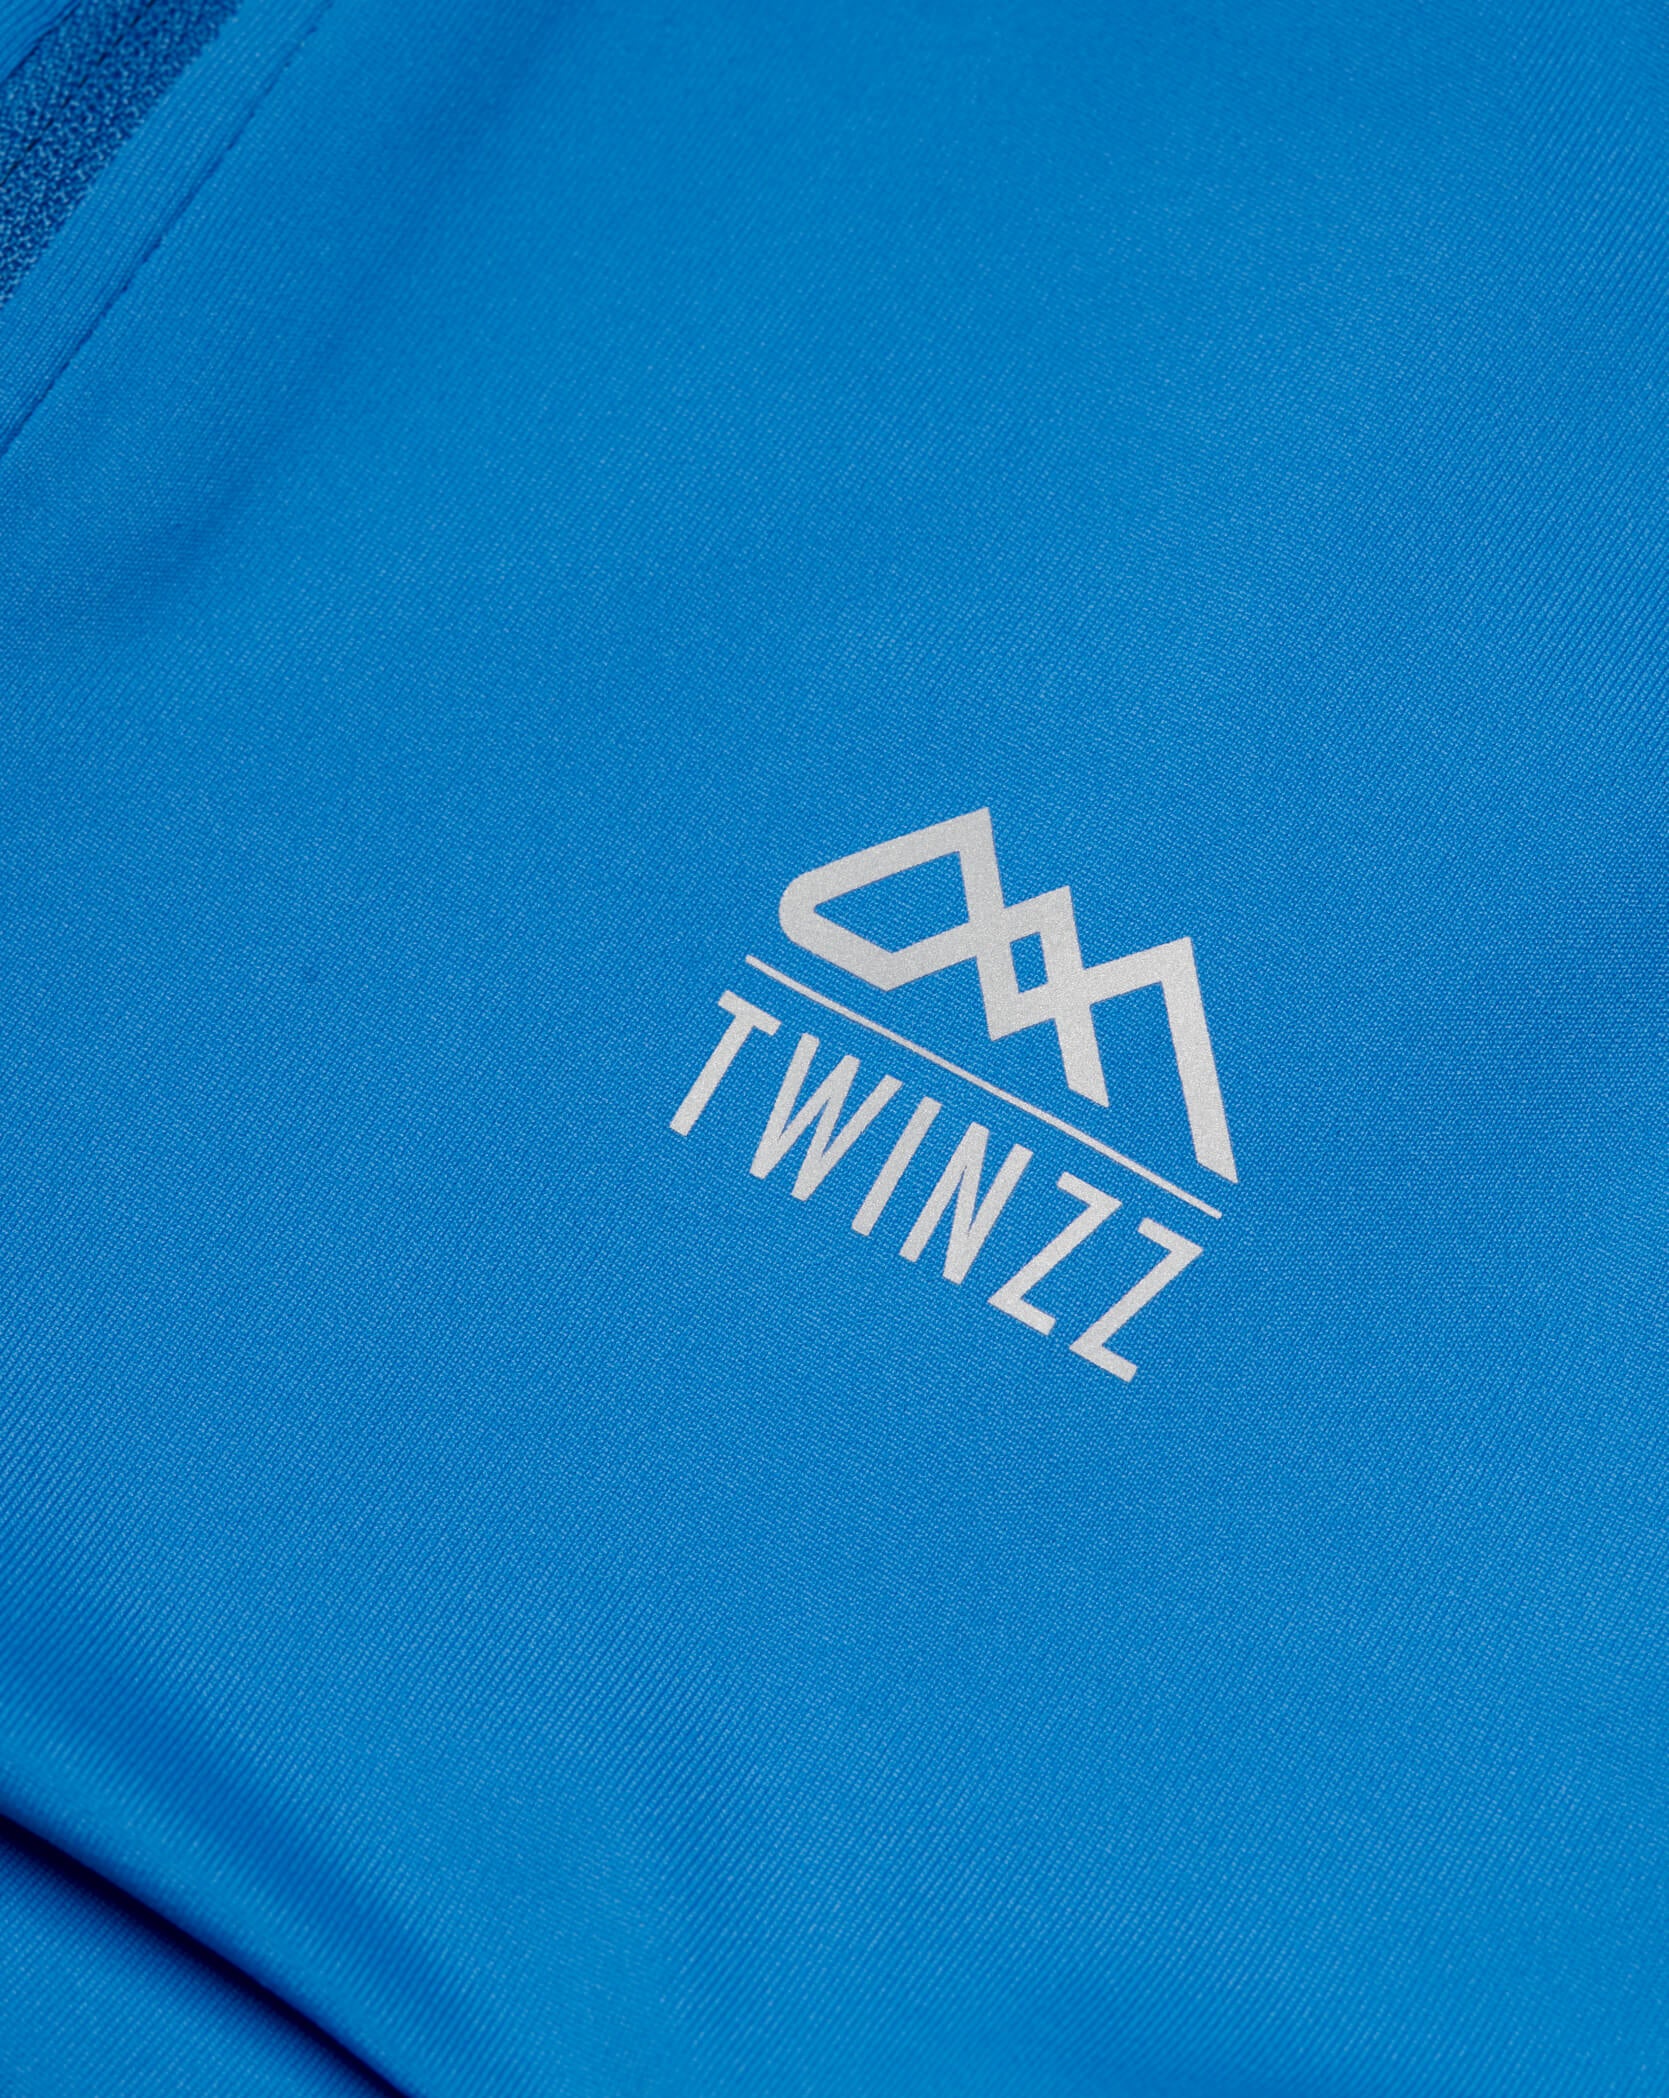 Blue Twinzz activewear zip top logo